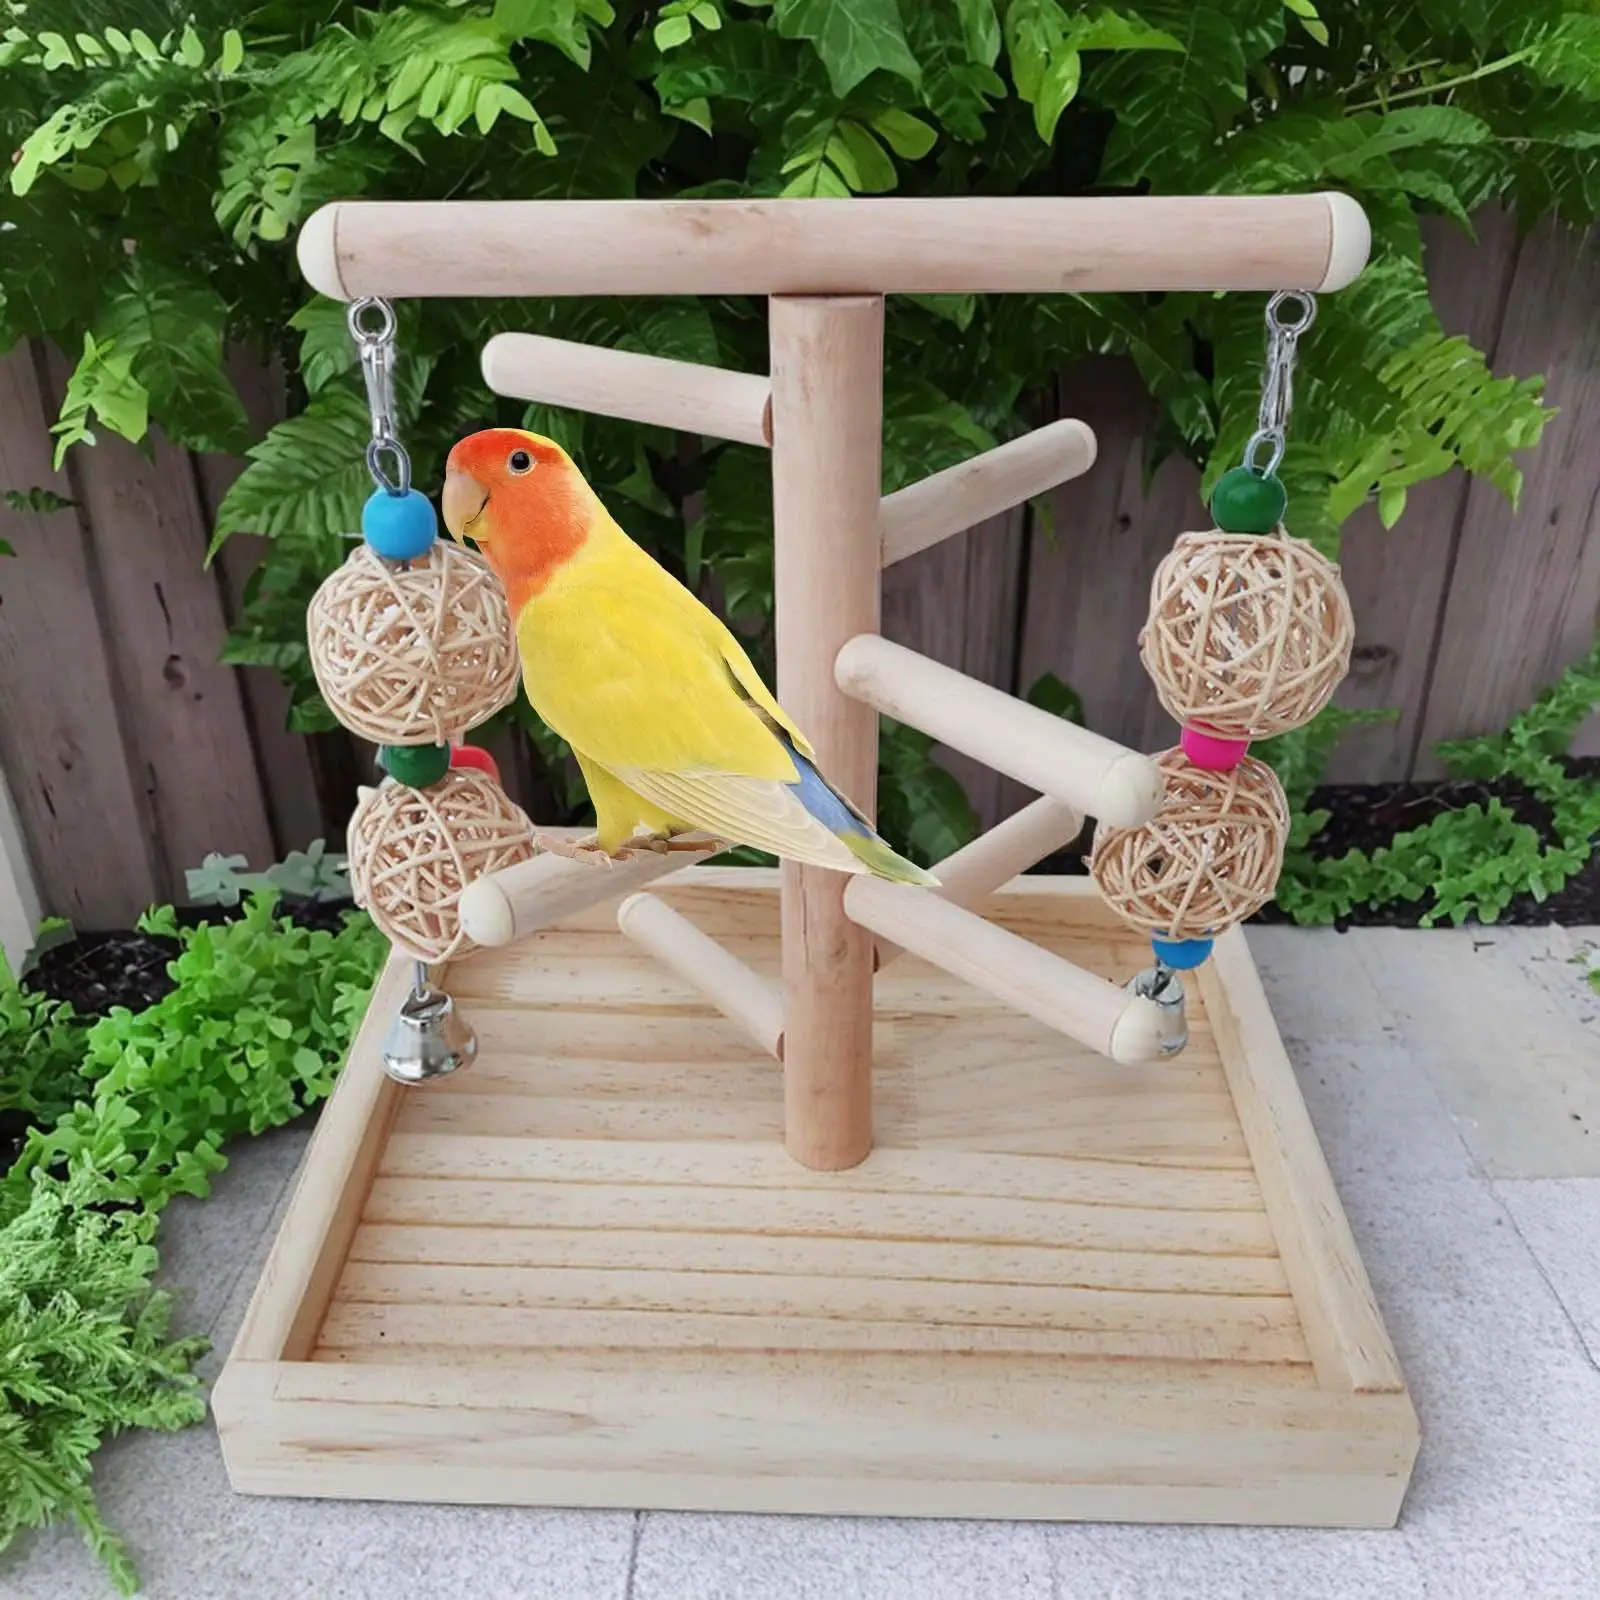 Wood Tabletop Bird Training Stand Wood Perch Bird Stand Budgie Bird Perch